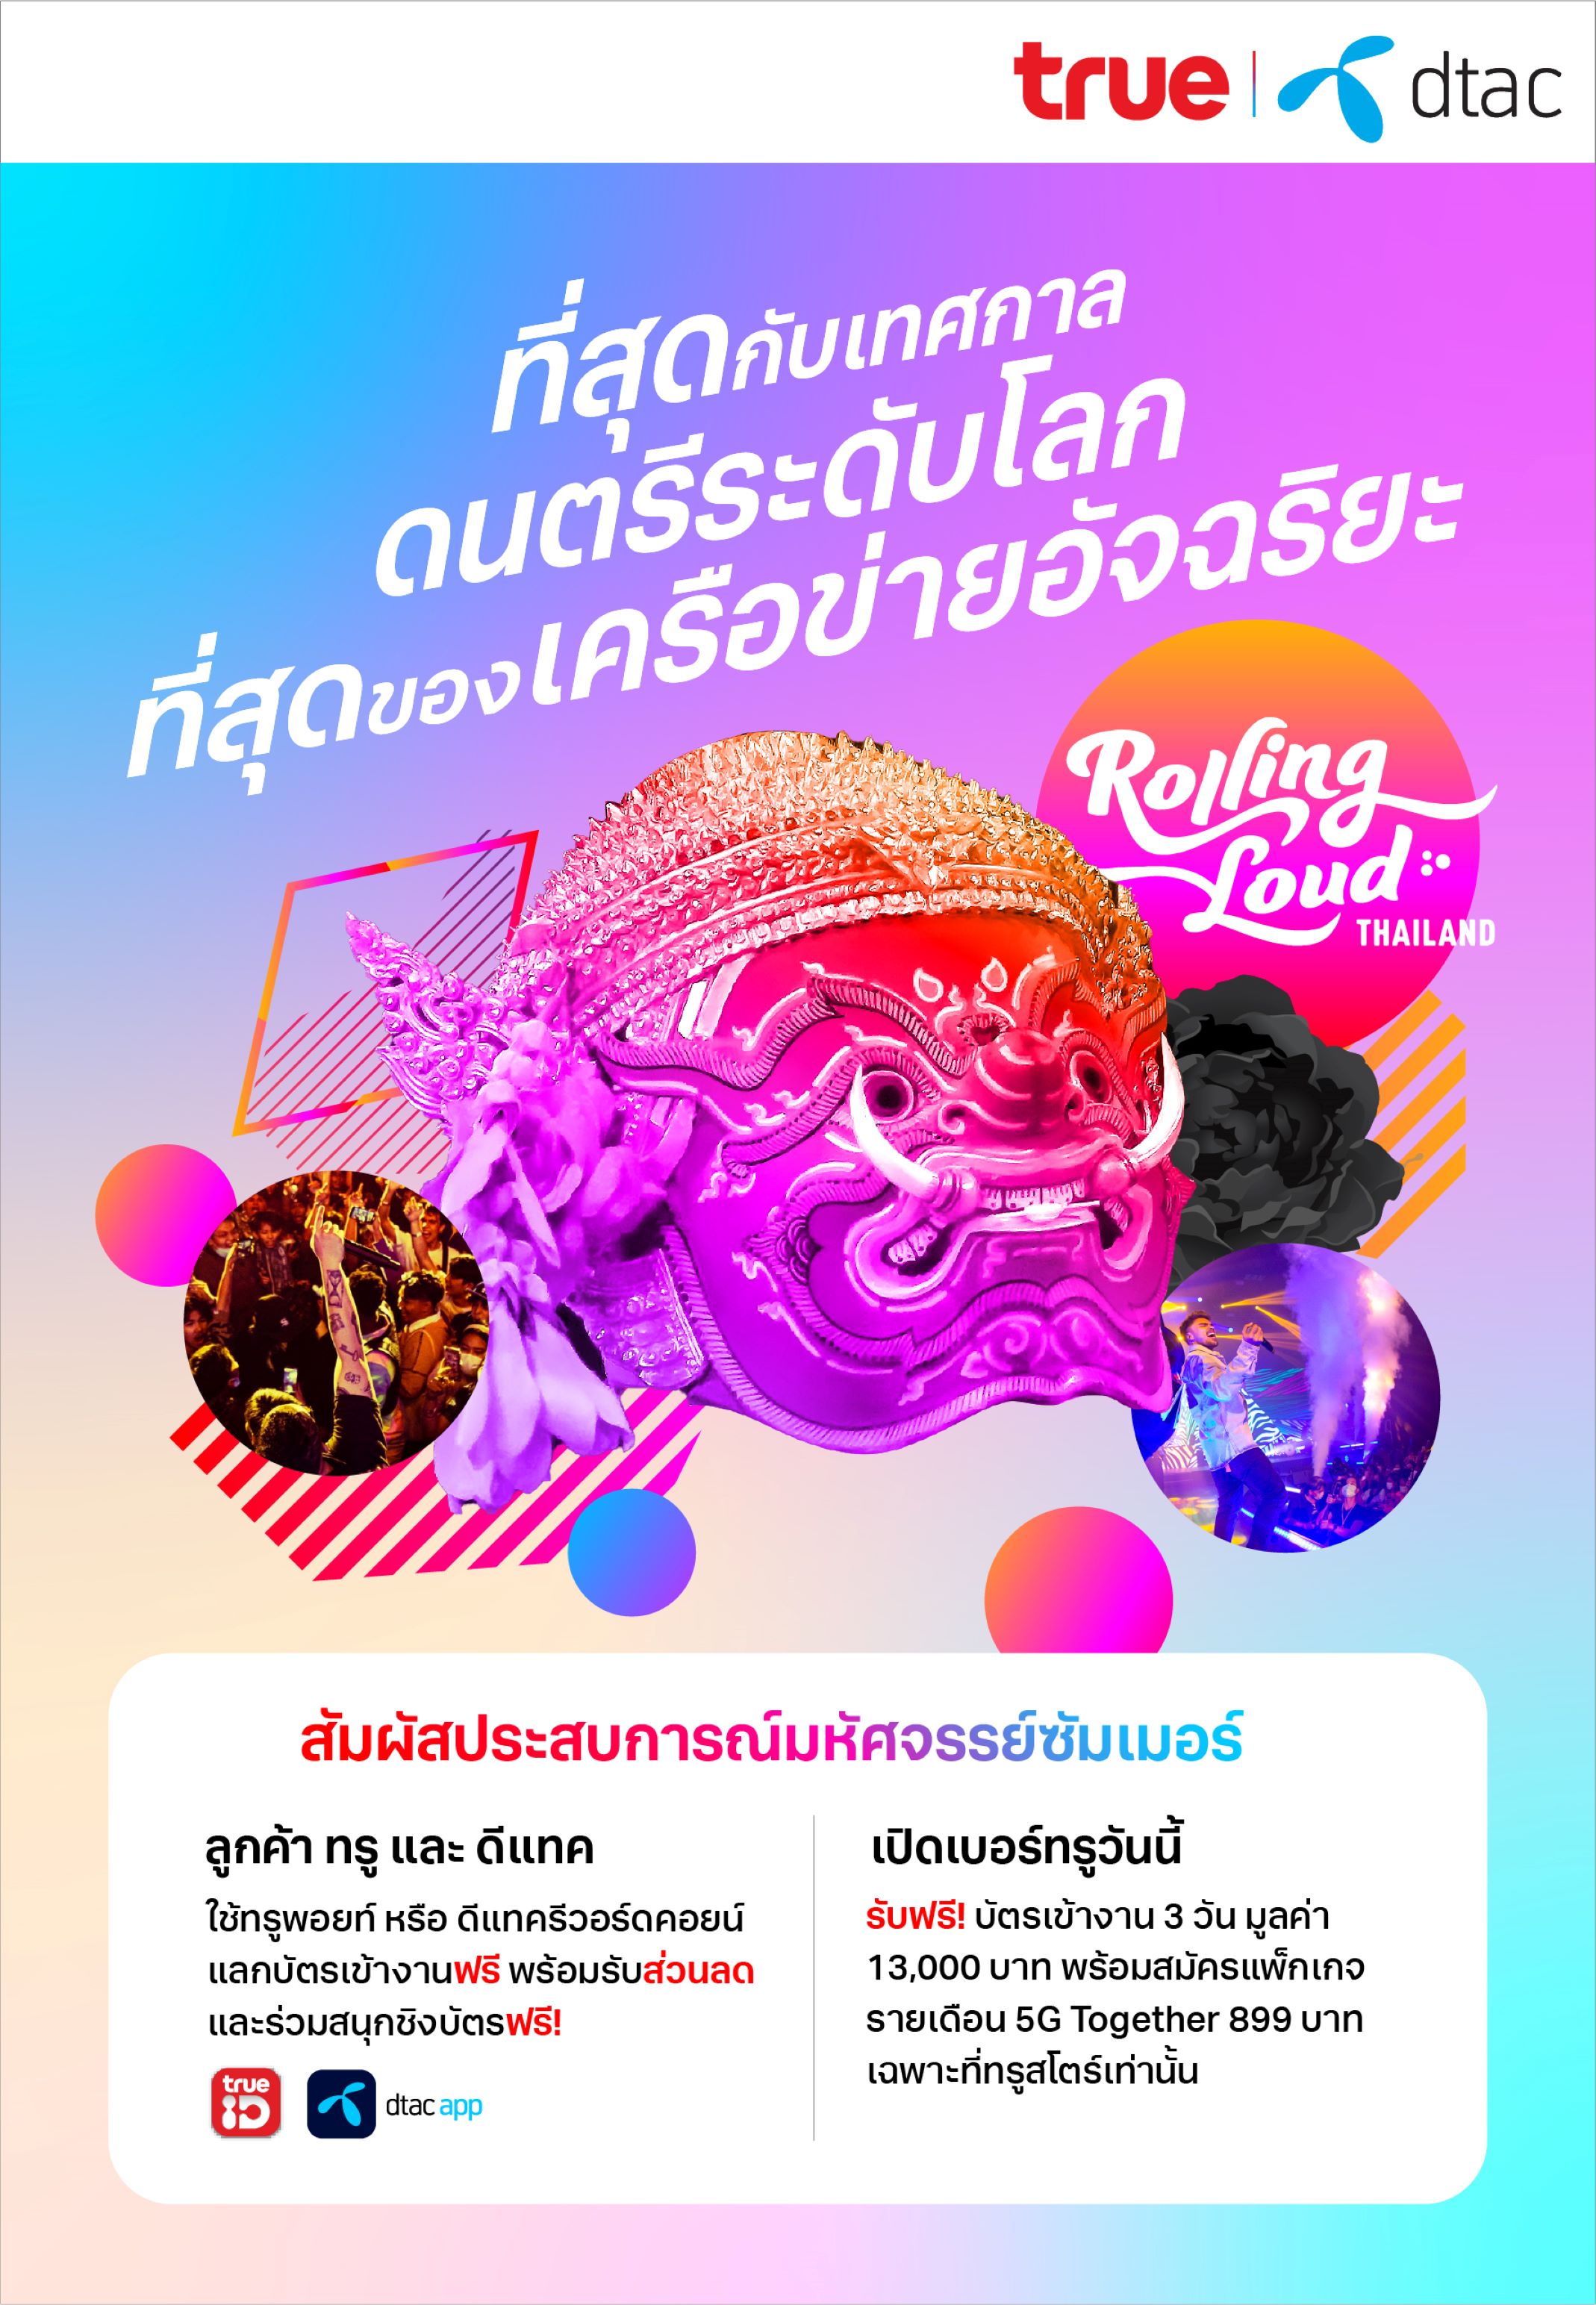 ลูกค้าทรูและดีแทค แลกรับบัตรเข้าชมคอนเสิร์ต Rolling Loud Thailand 2023 เพียงใช้ 2,999 ทรูพอยท์ หรือ 5,999 ดีแทค รีวอร์ด คอยน์ หรือเปิดบริการ THAILAND TOURIST INFINITE ตามเงื่อนไข